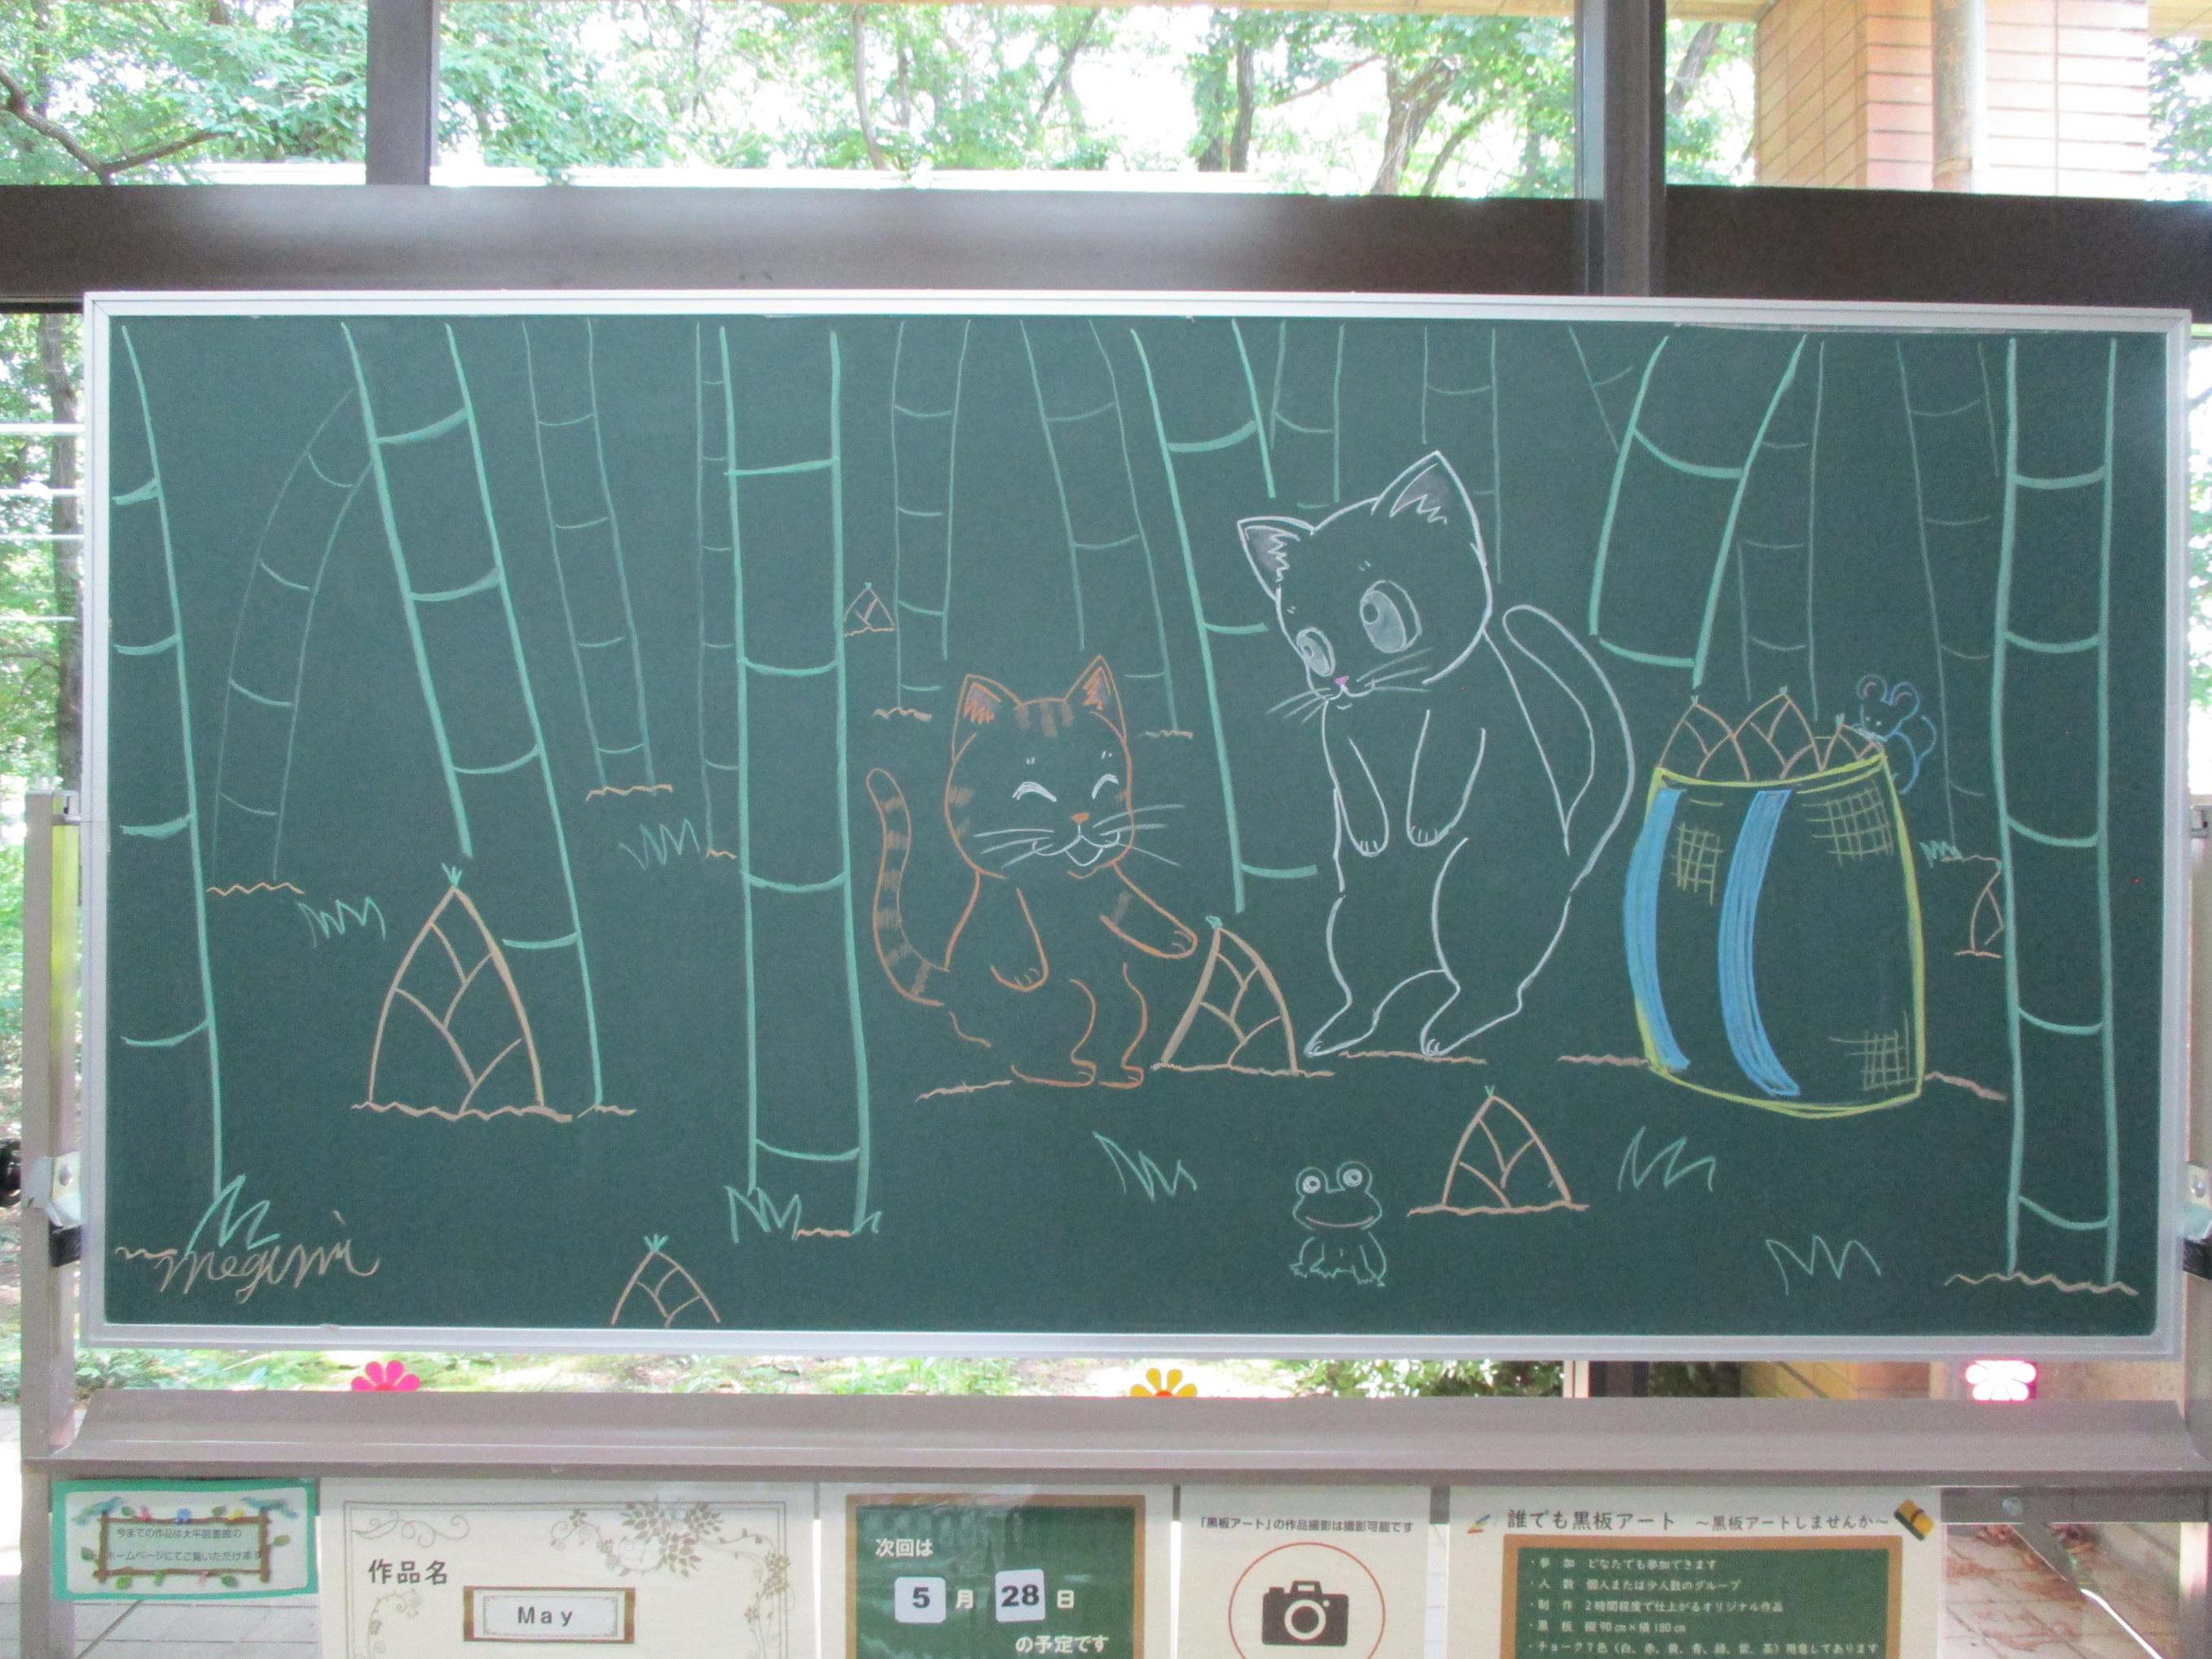 「May／Megumi様」黒板アートの写真